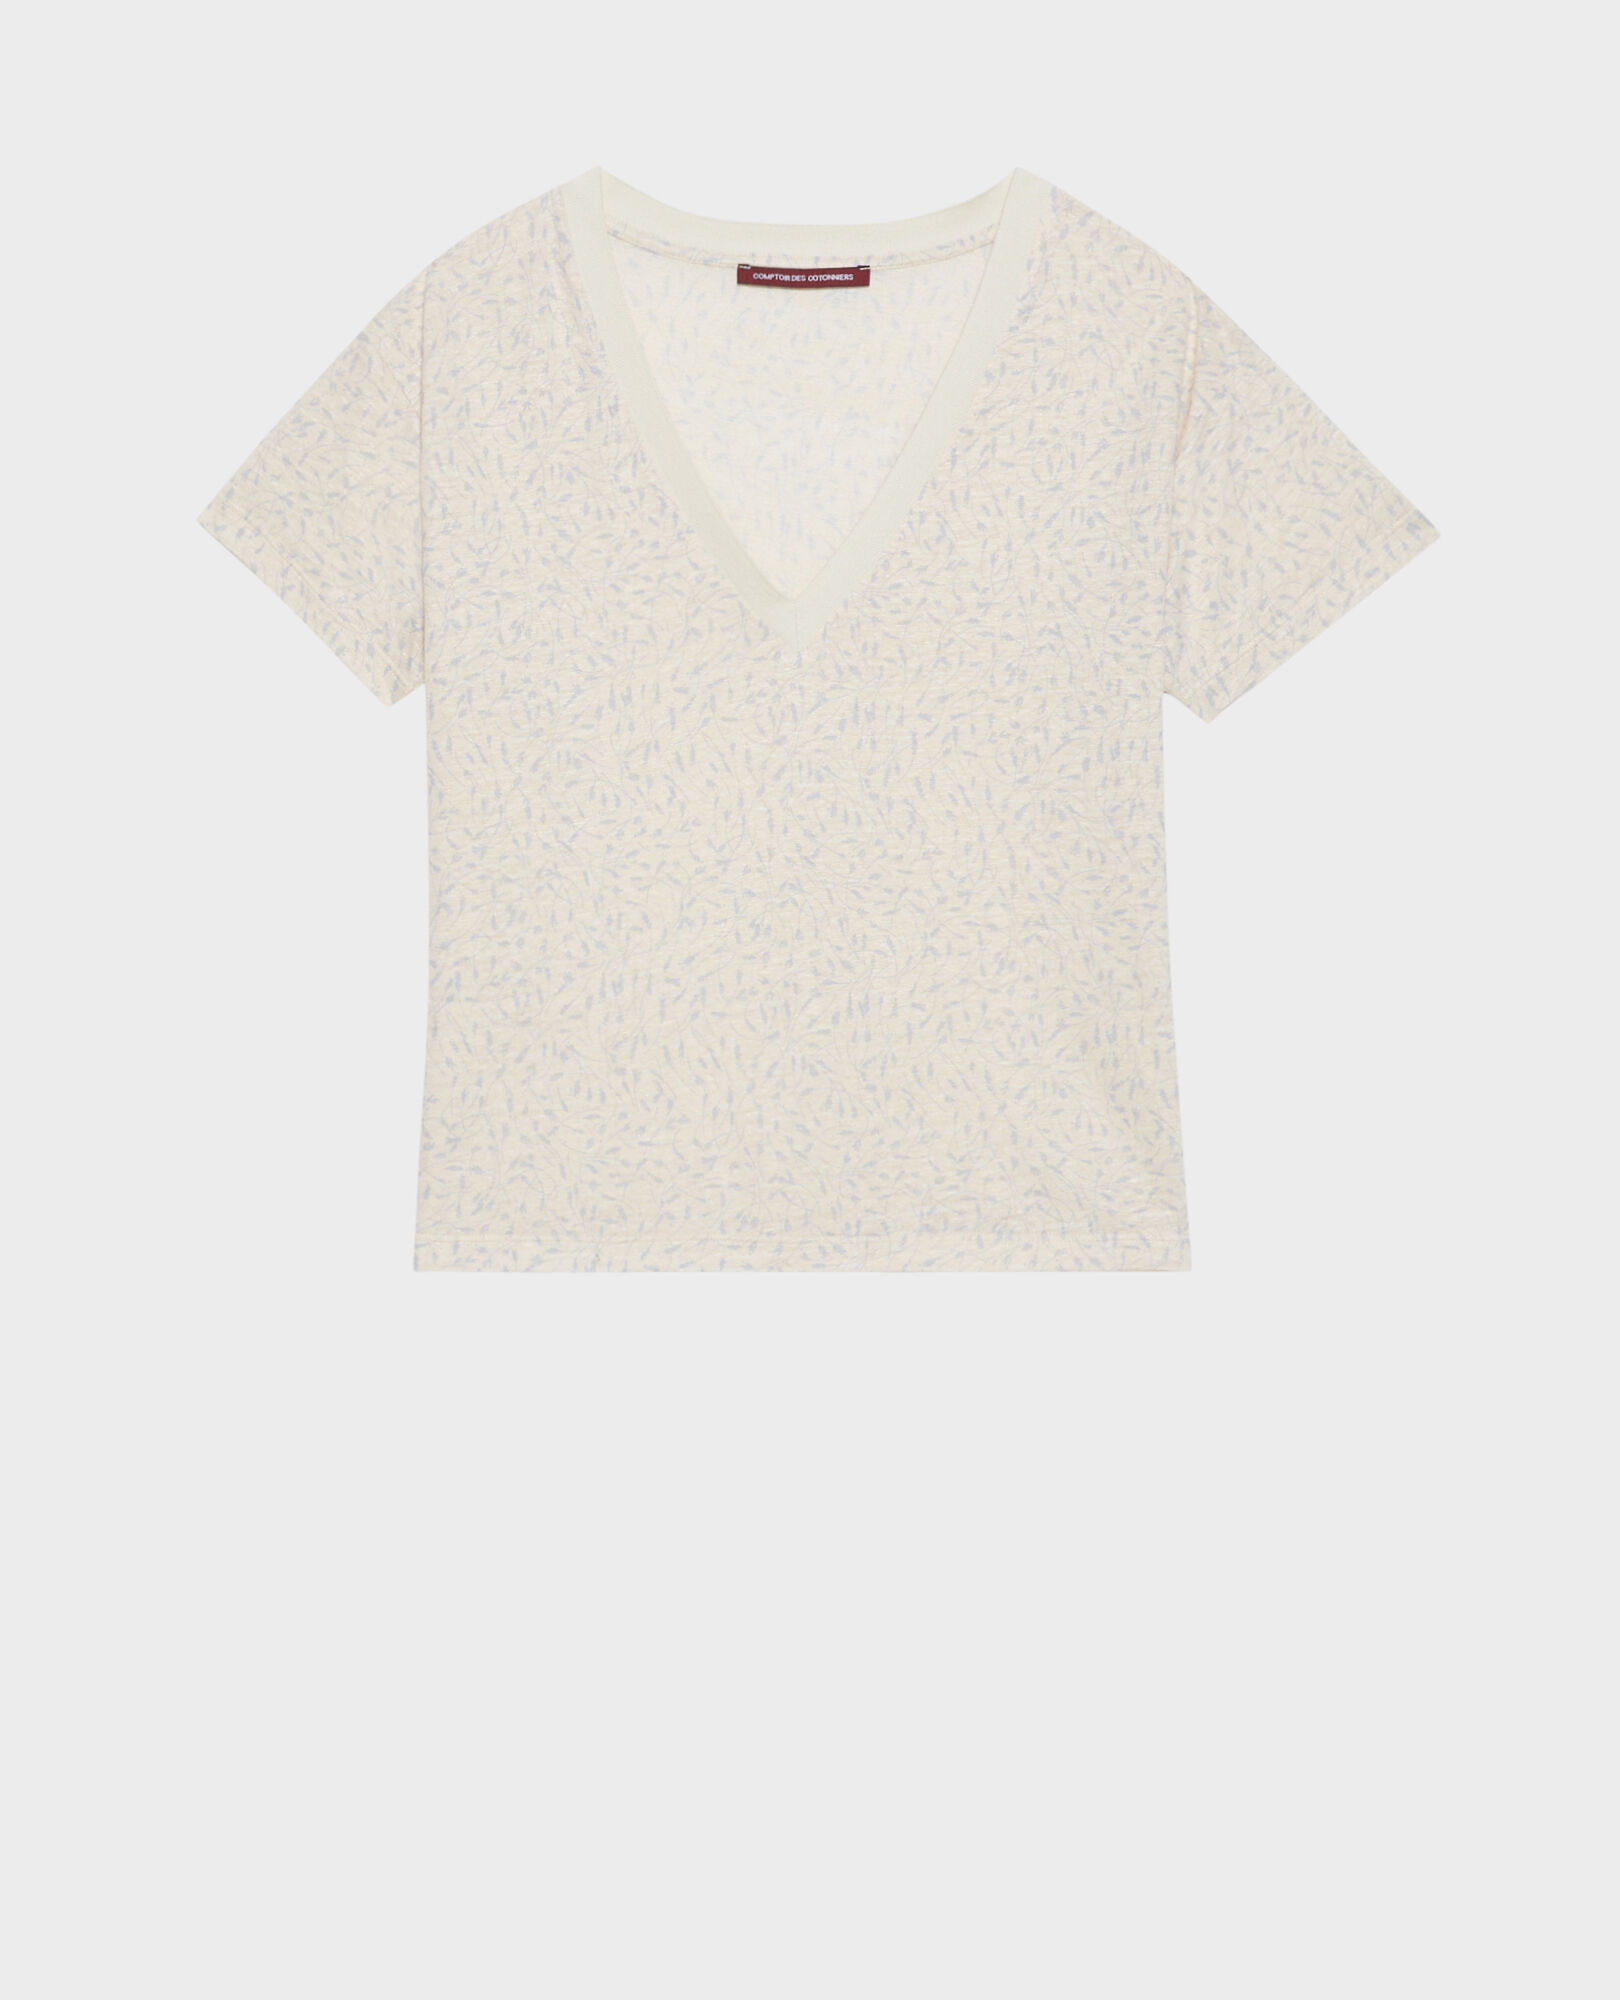 SARAH - T-Shirt mit V-Ausschnitt aus Leinen 91 print white 2ste338f05